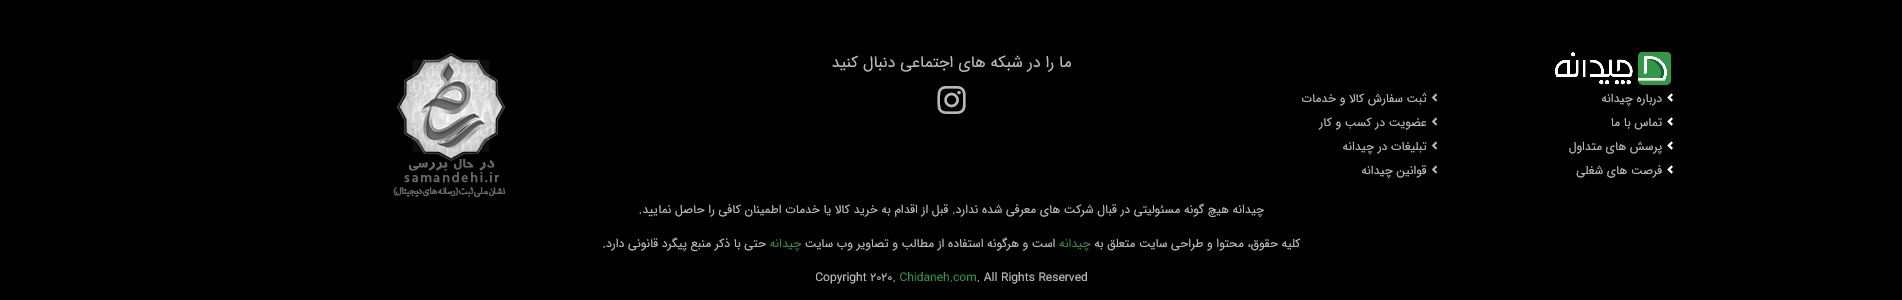 فوتر وبسایت هنری و آموزشی طراحی دکوراسیون داخلی چیدانه خرداد ۱۴۰۰